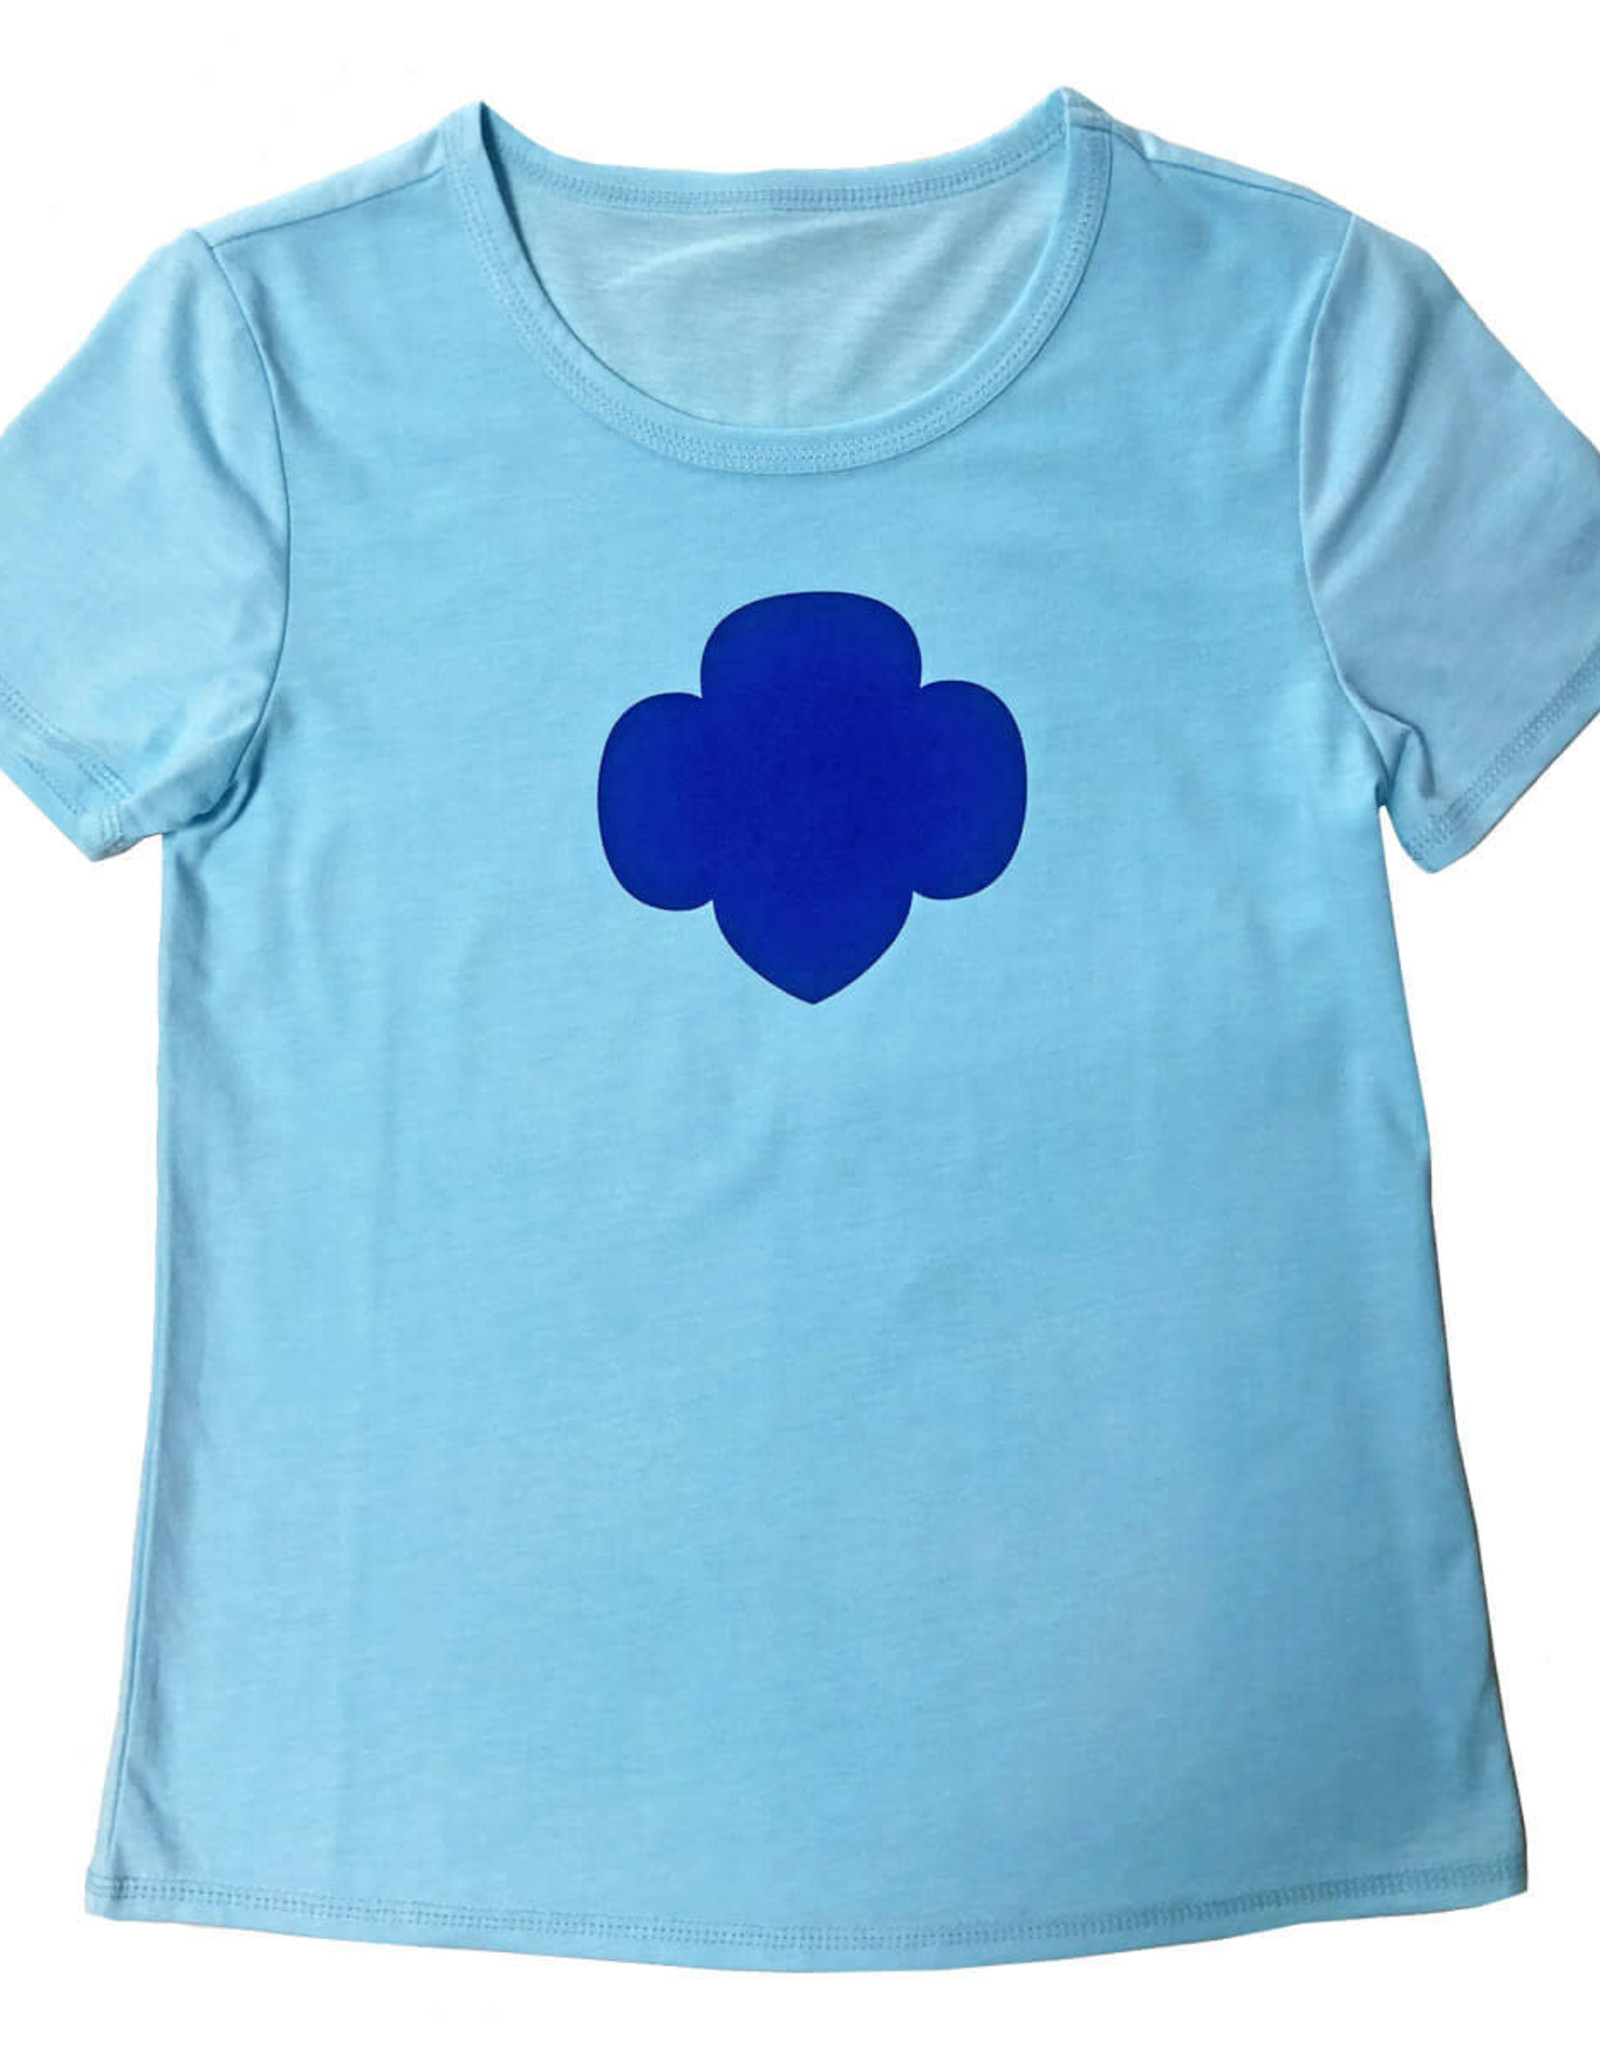 Girls Trefoil T-Shirt Sky Blue